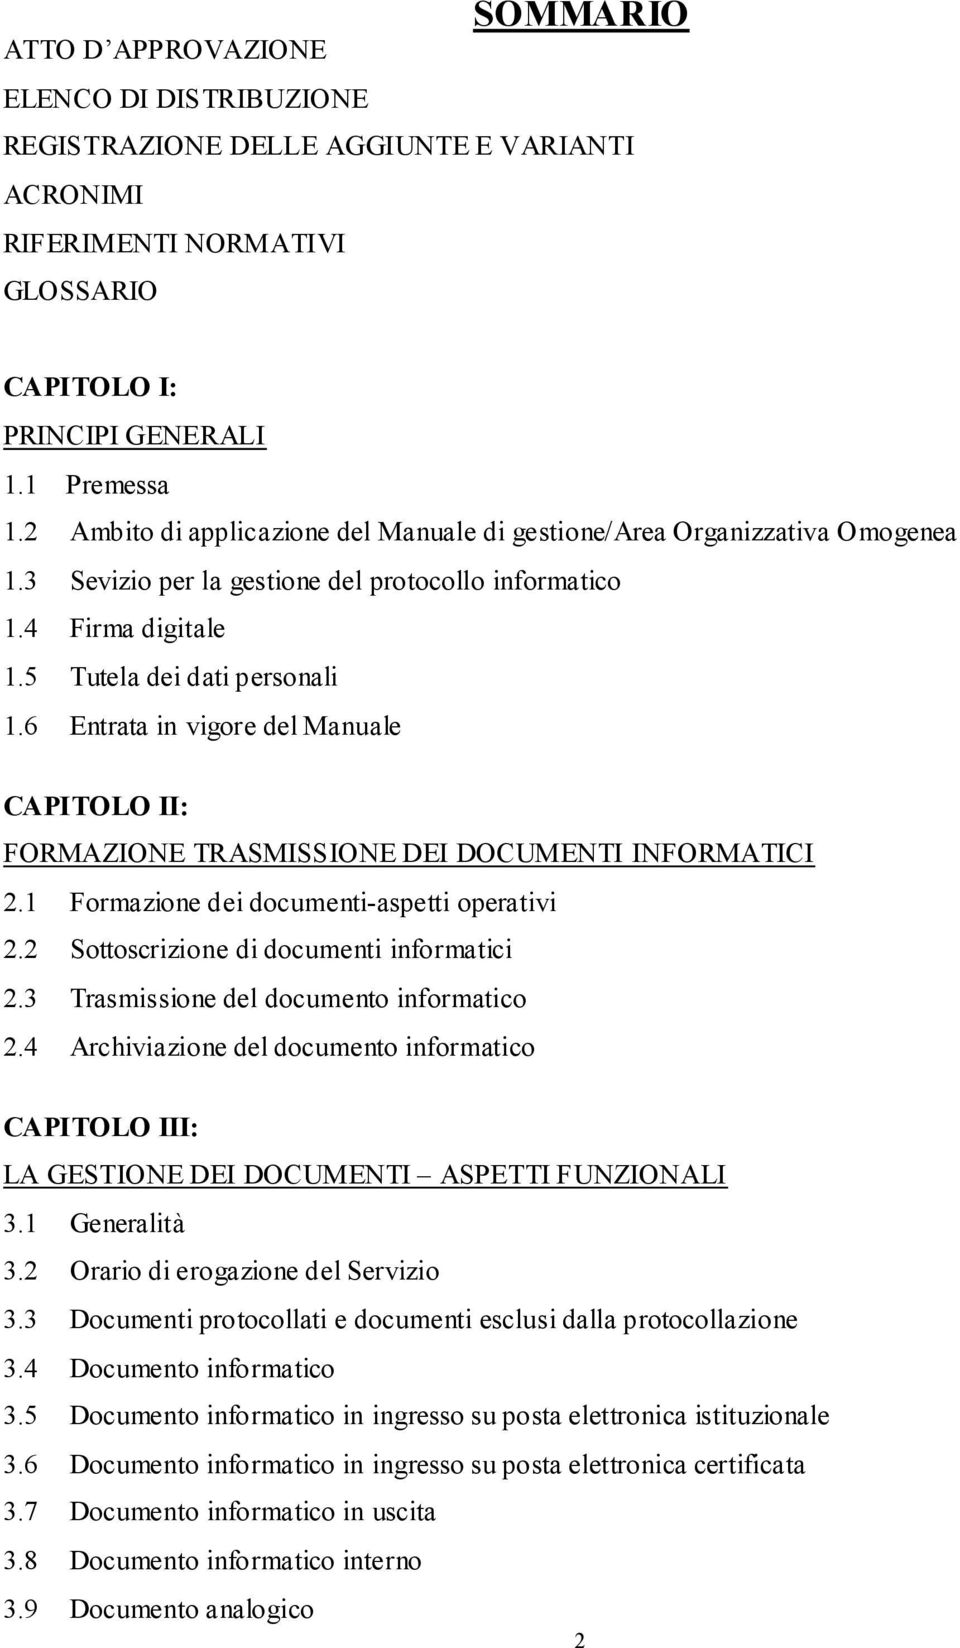 6 Entrata in vigore del Manuale CAPITOLO II: FORMAZIONE TRASMISSIONE DEI DOCUMENTI INFORMATICI 2.1 Formazione dei documenti-aspetti operativi 2.2 Sottoscrizione di documenti informatici 2.